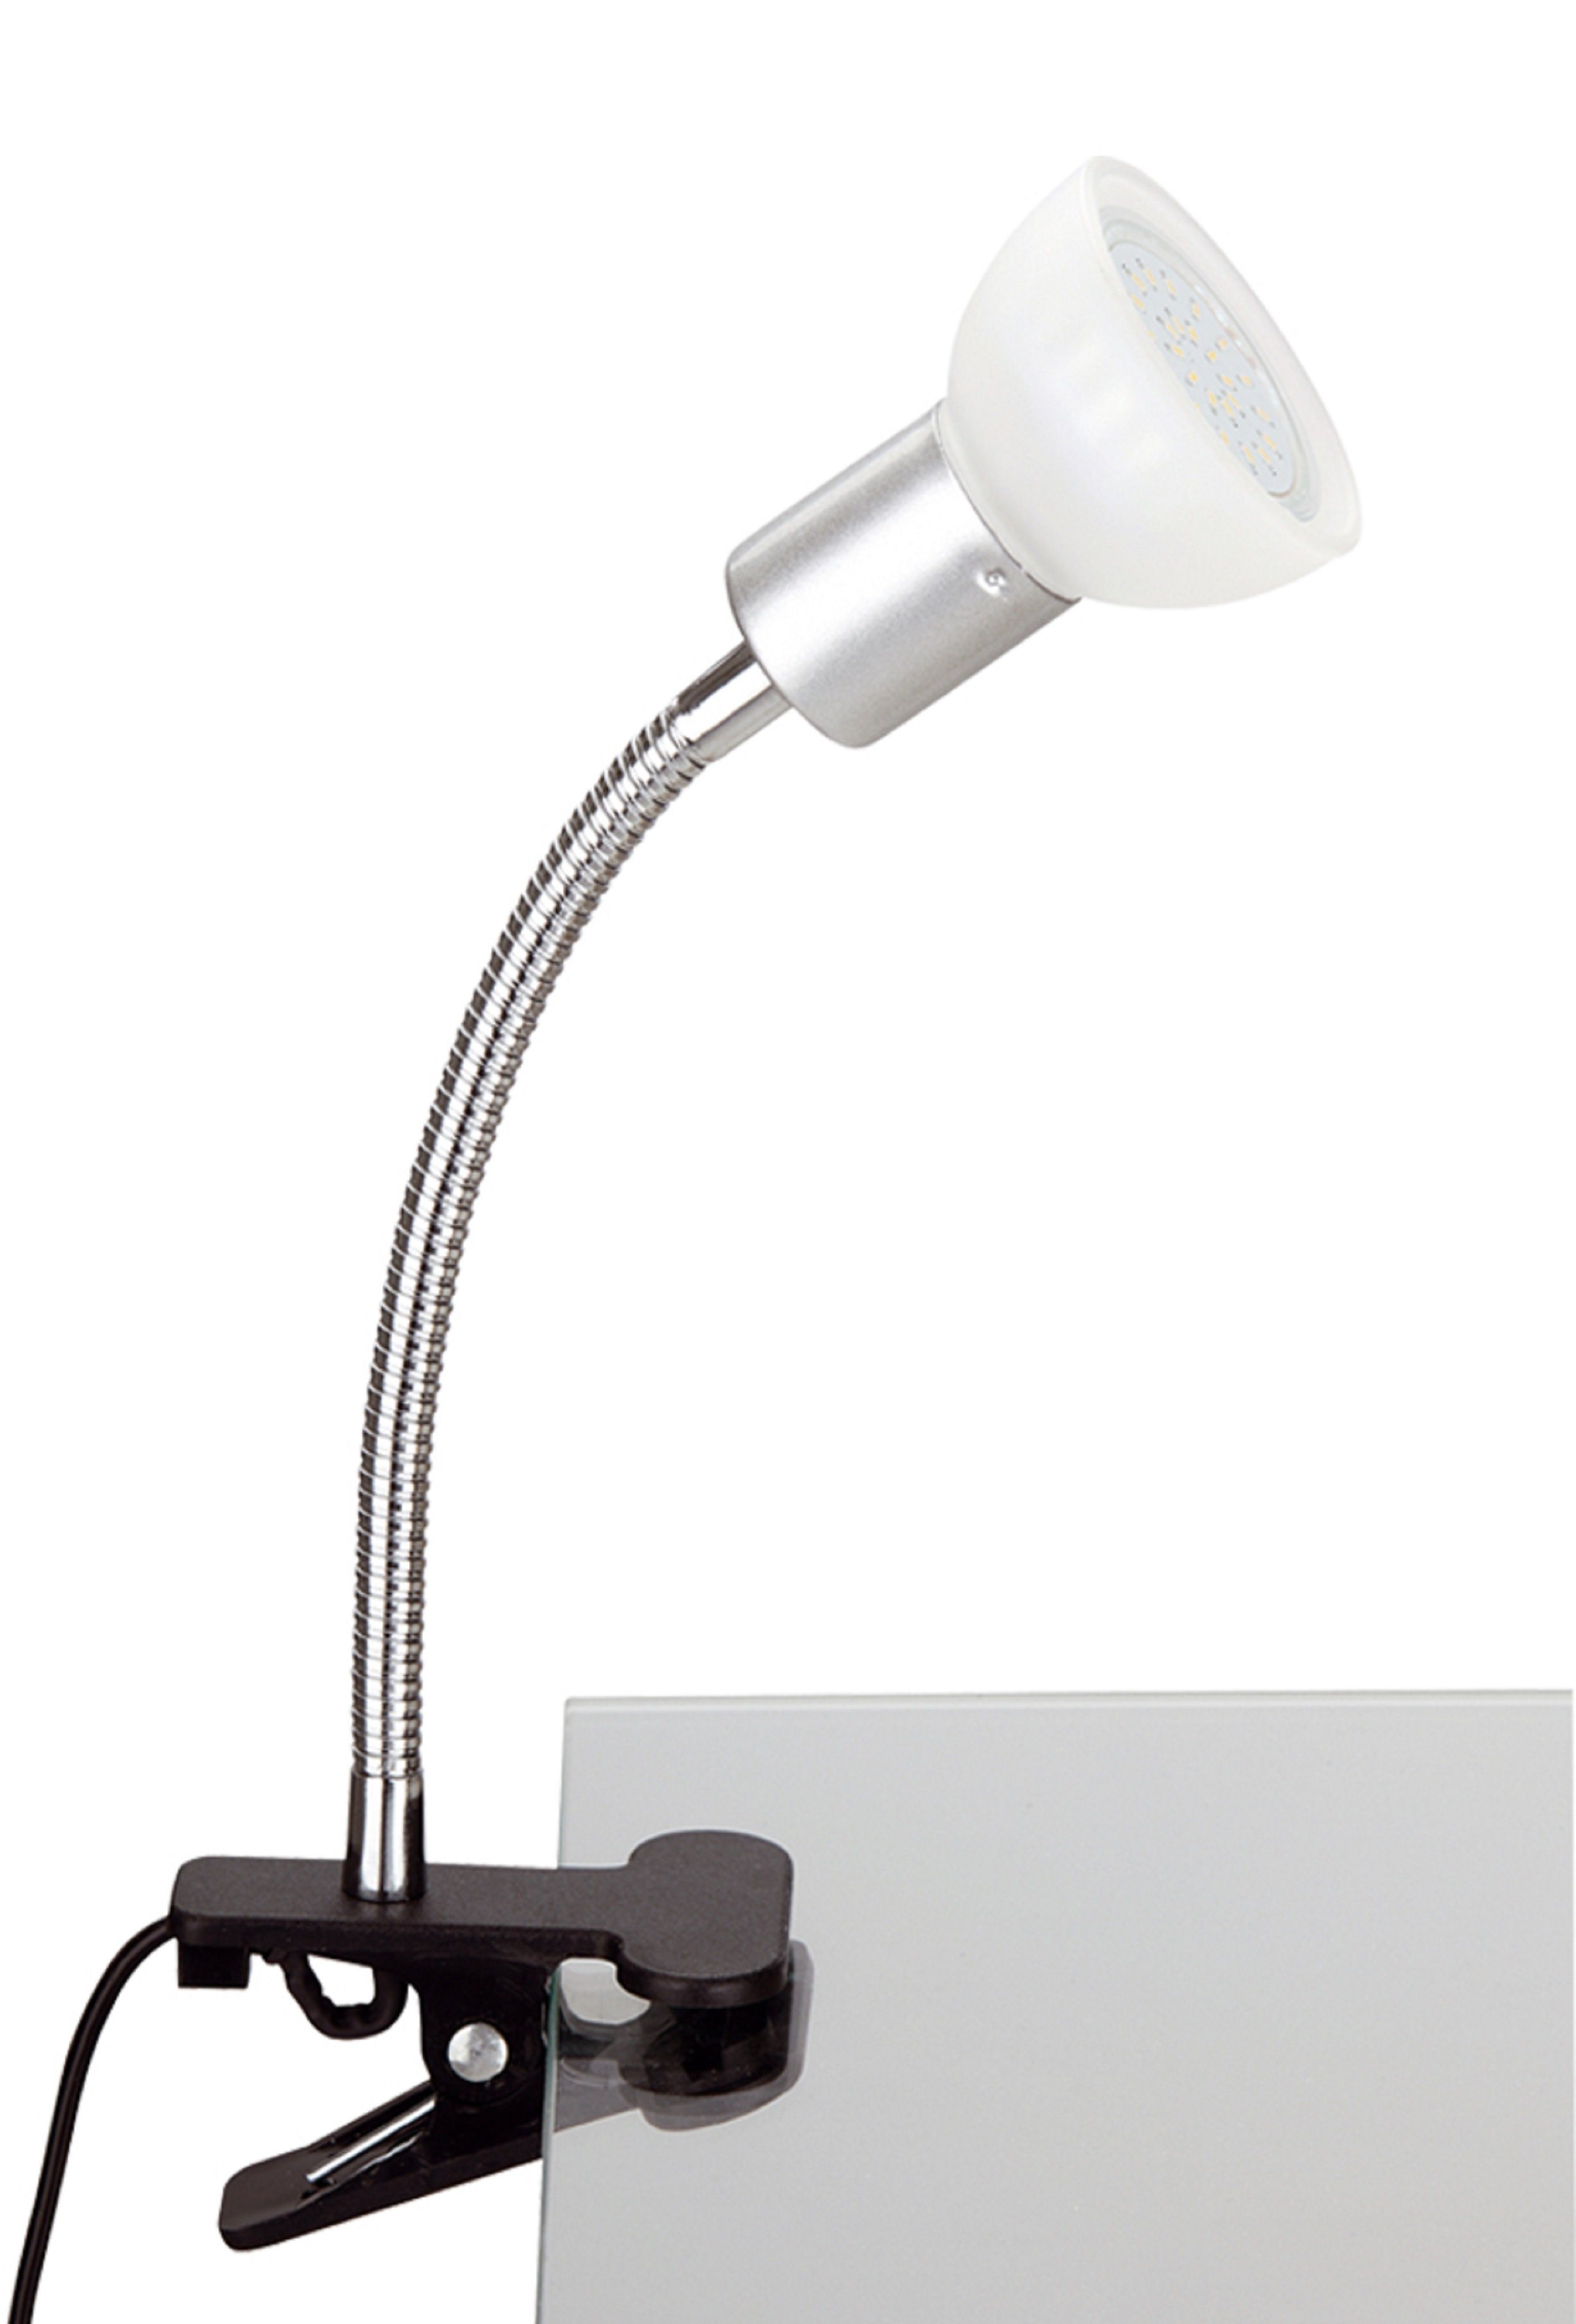 LED Klemmleuchte Leselampe Tischlampe Clip On Büroleuchte Flexibel Leseleuchte 